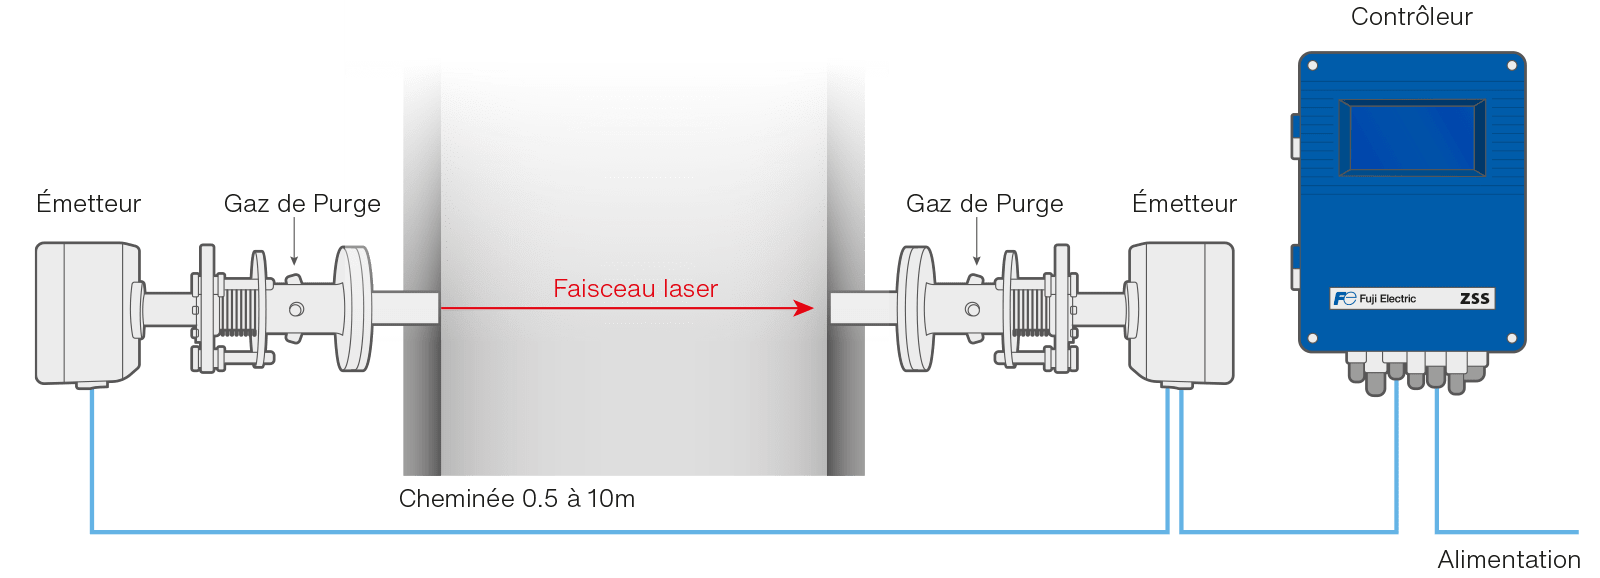 analizador de gases para la desulfuración de gases esquema es